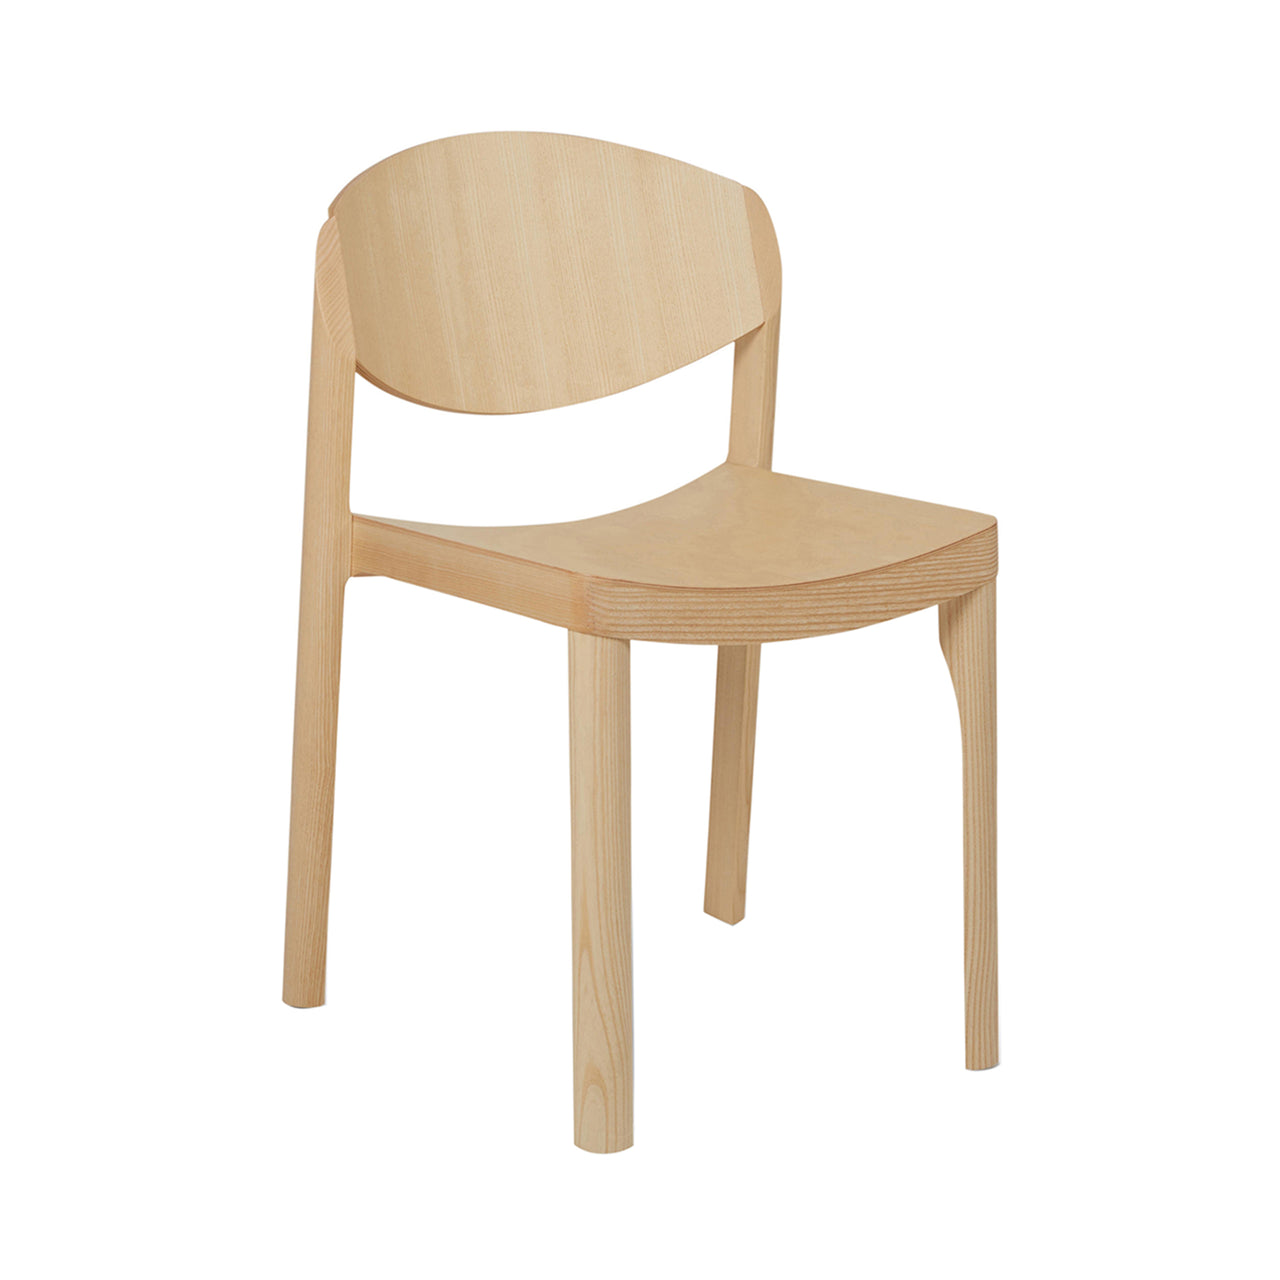 Mauro Chair: 1 + Ash